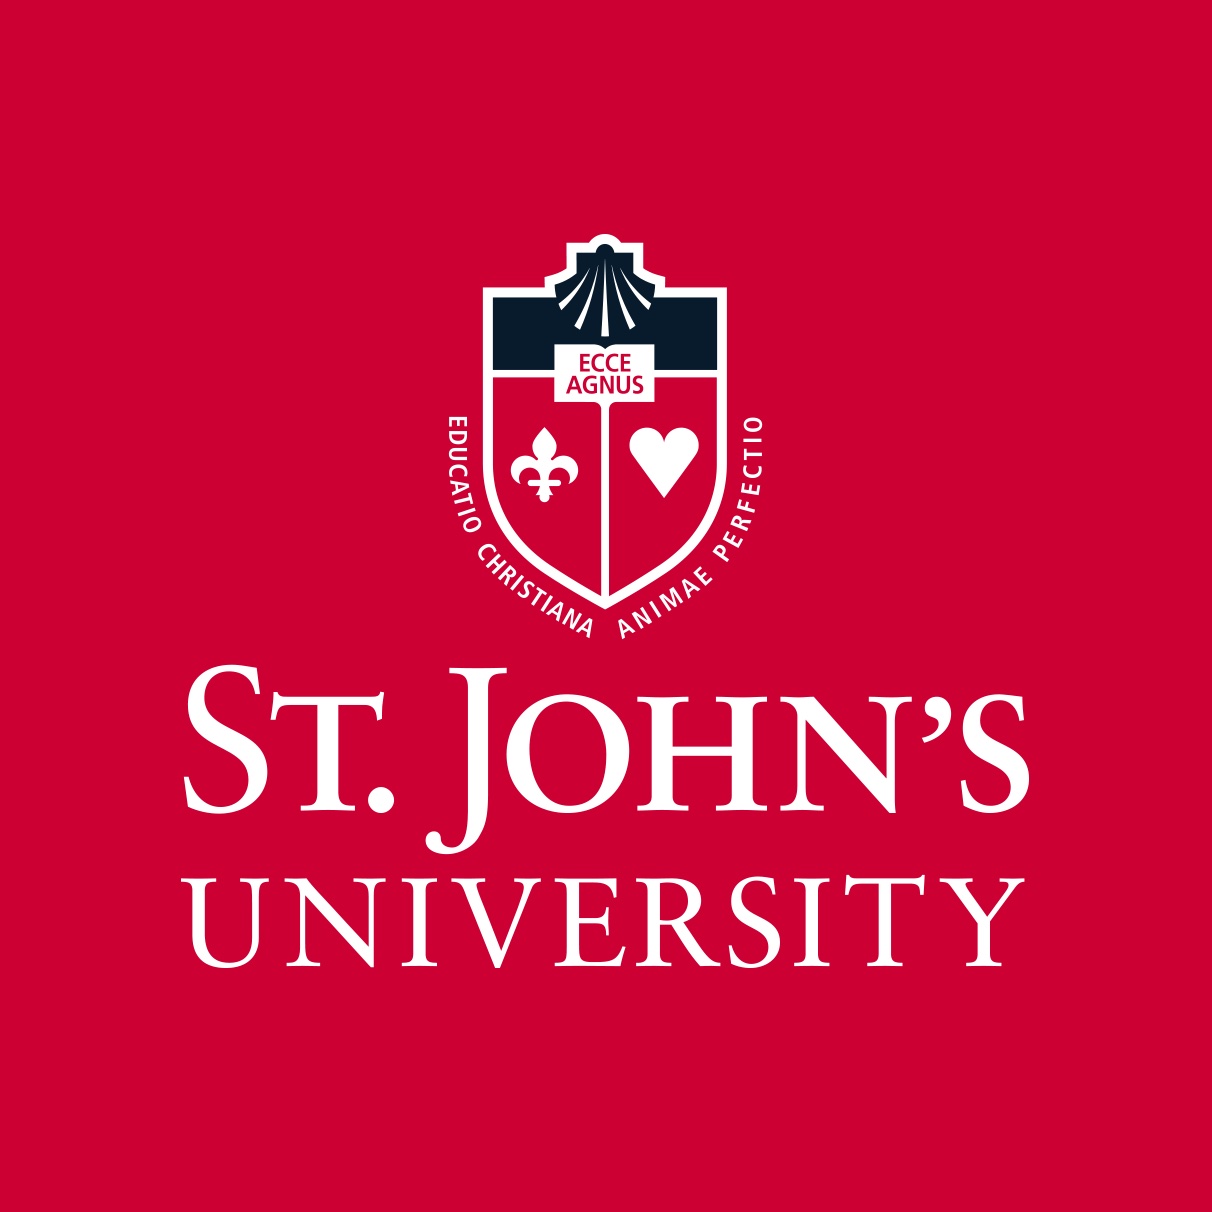 St. John's Logo